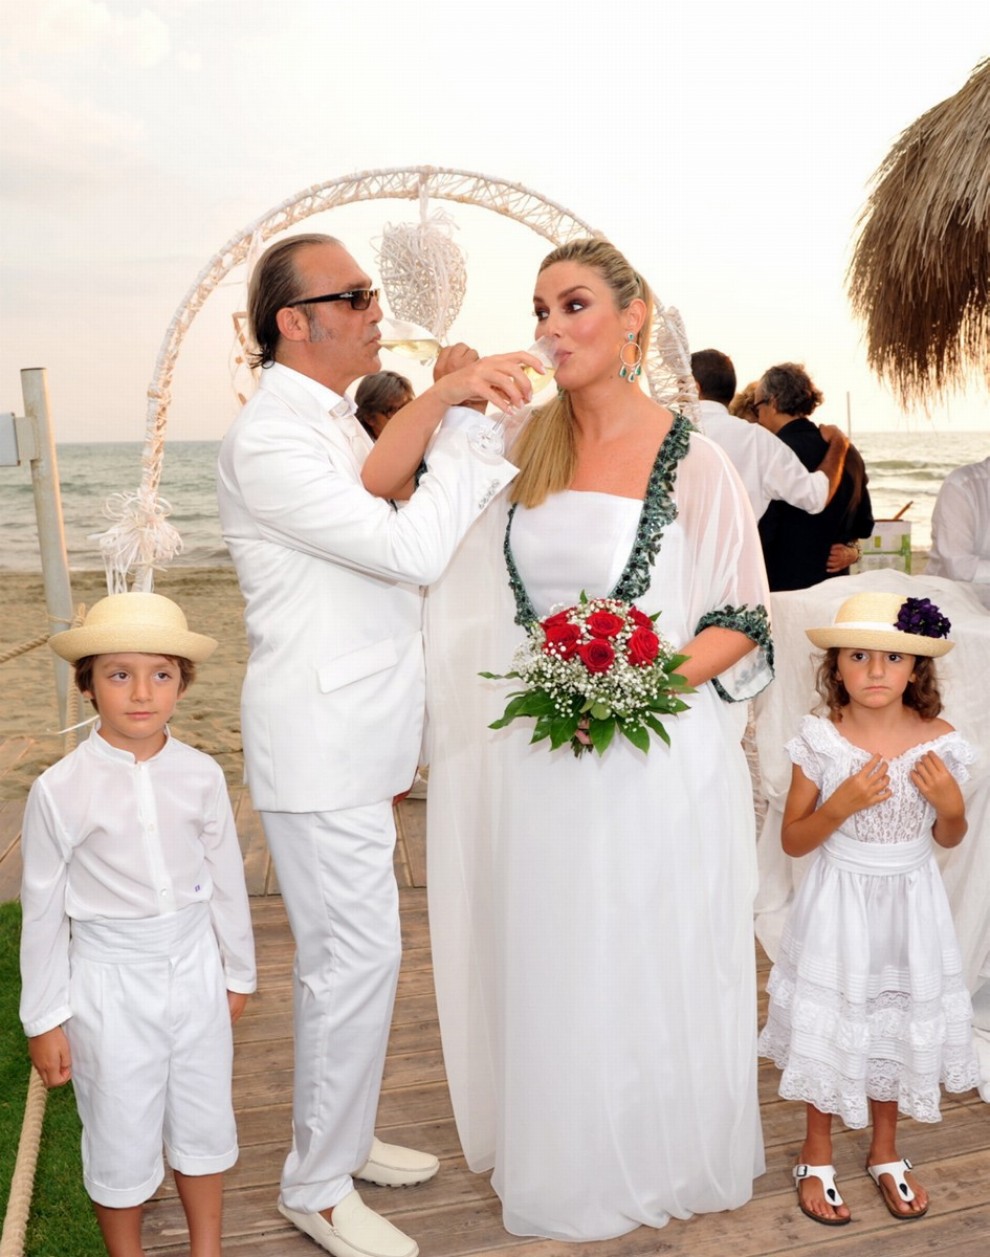 Luca Ward il giorno delle nozze con Giada Desideri: al suo fianco, i figli Lupo e Luna / Fonte foto: TvZap